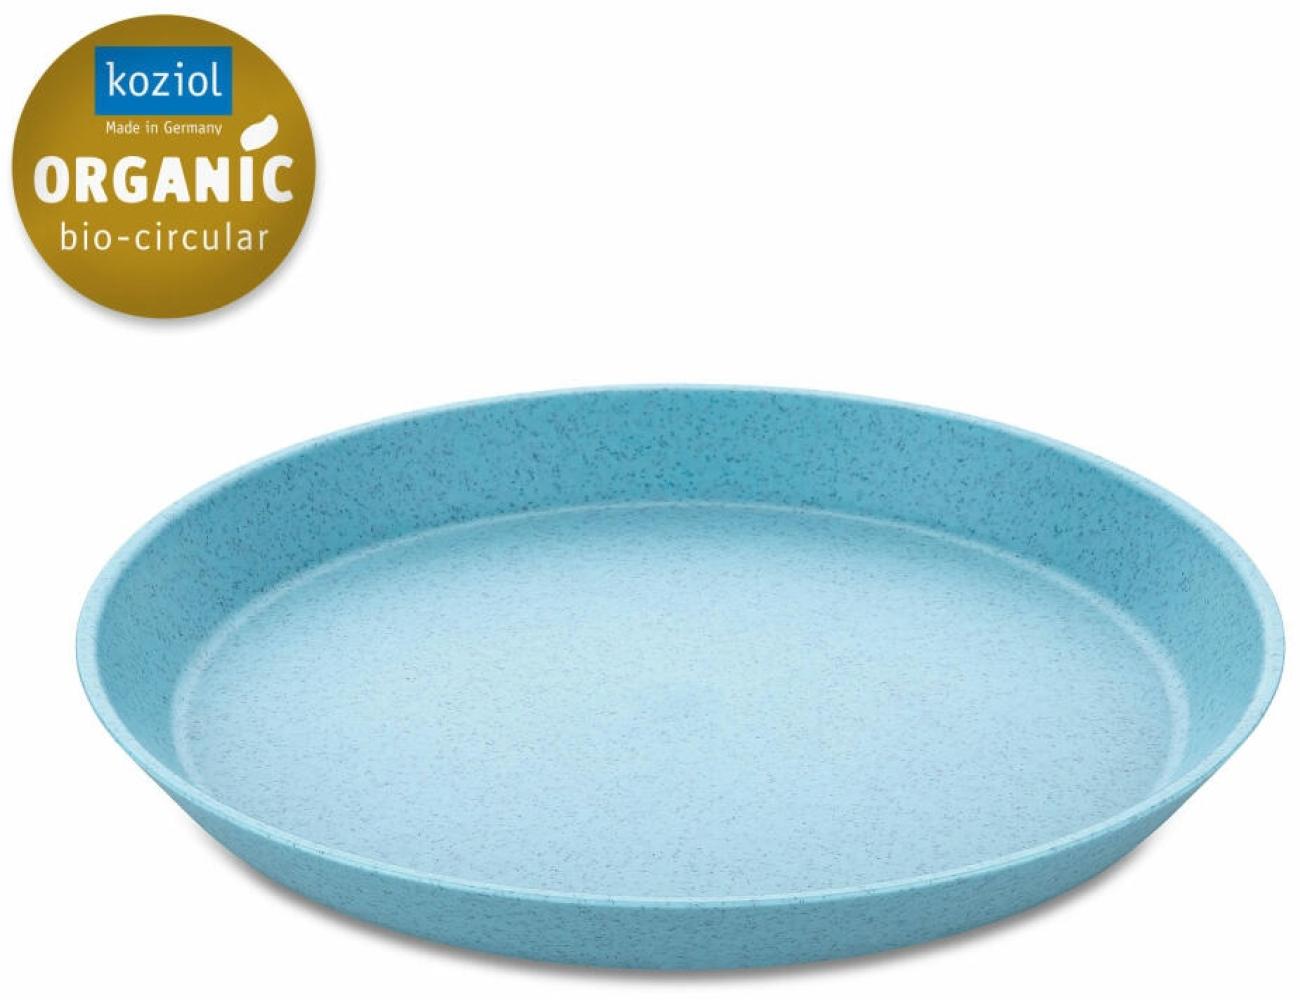 Koziol Kleiner Teller Connect Plate, Kuchenteller, Kunststoff, Organic Frostie Blue, 20. 5 cm, 3100706 Bild 1